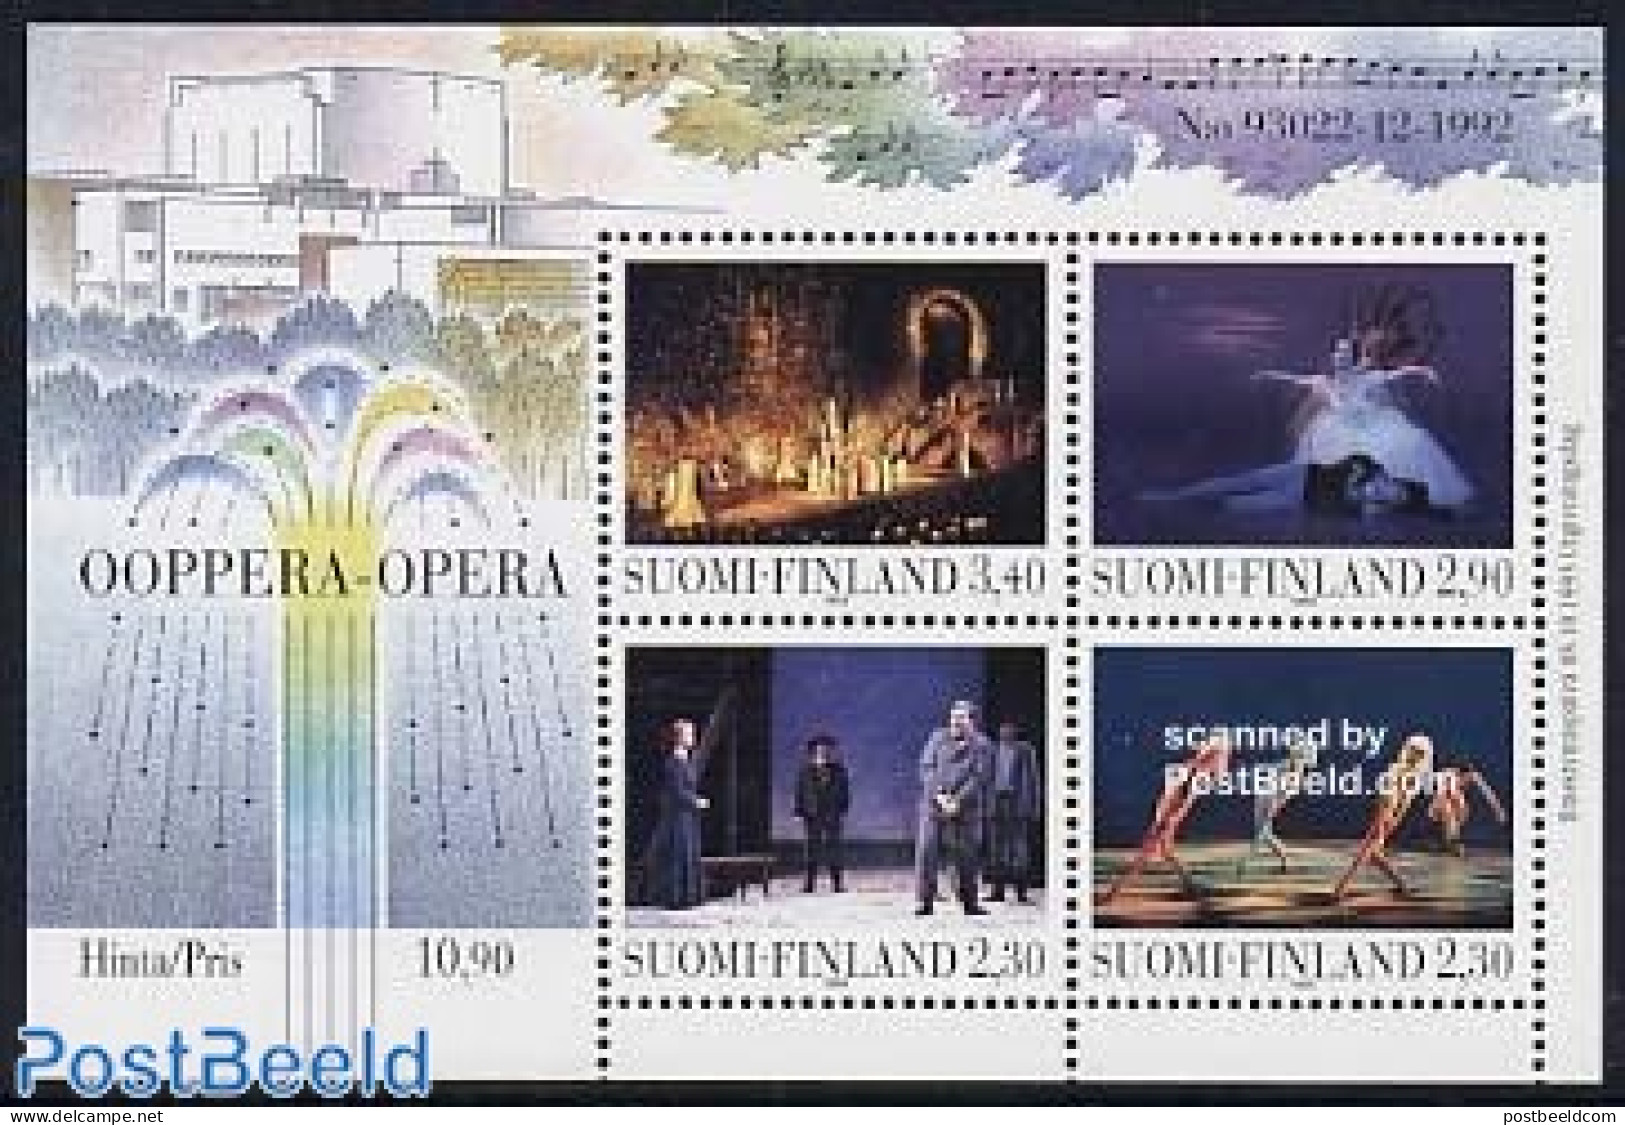 Finland 1993 Opera House S/s, Mint NH, Performance Art - Dance & Ballet - Music - Theatre - Ongebruikt